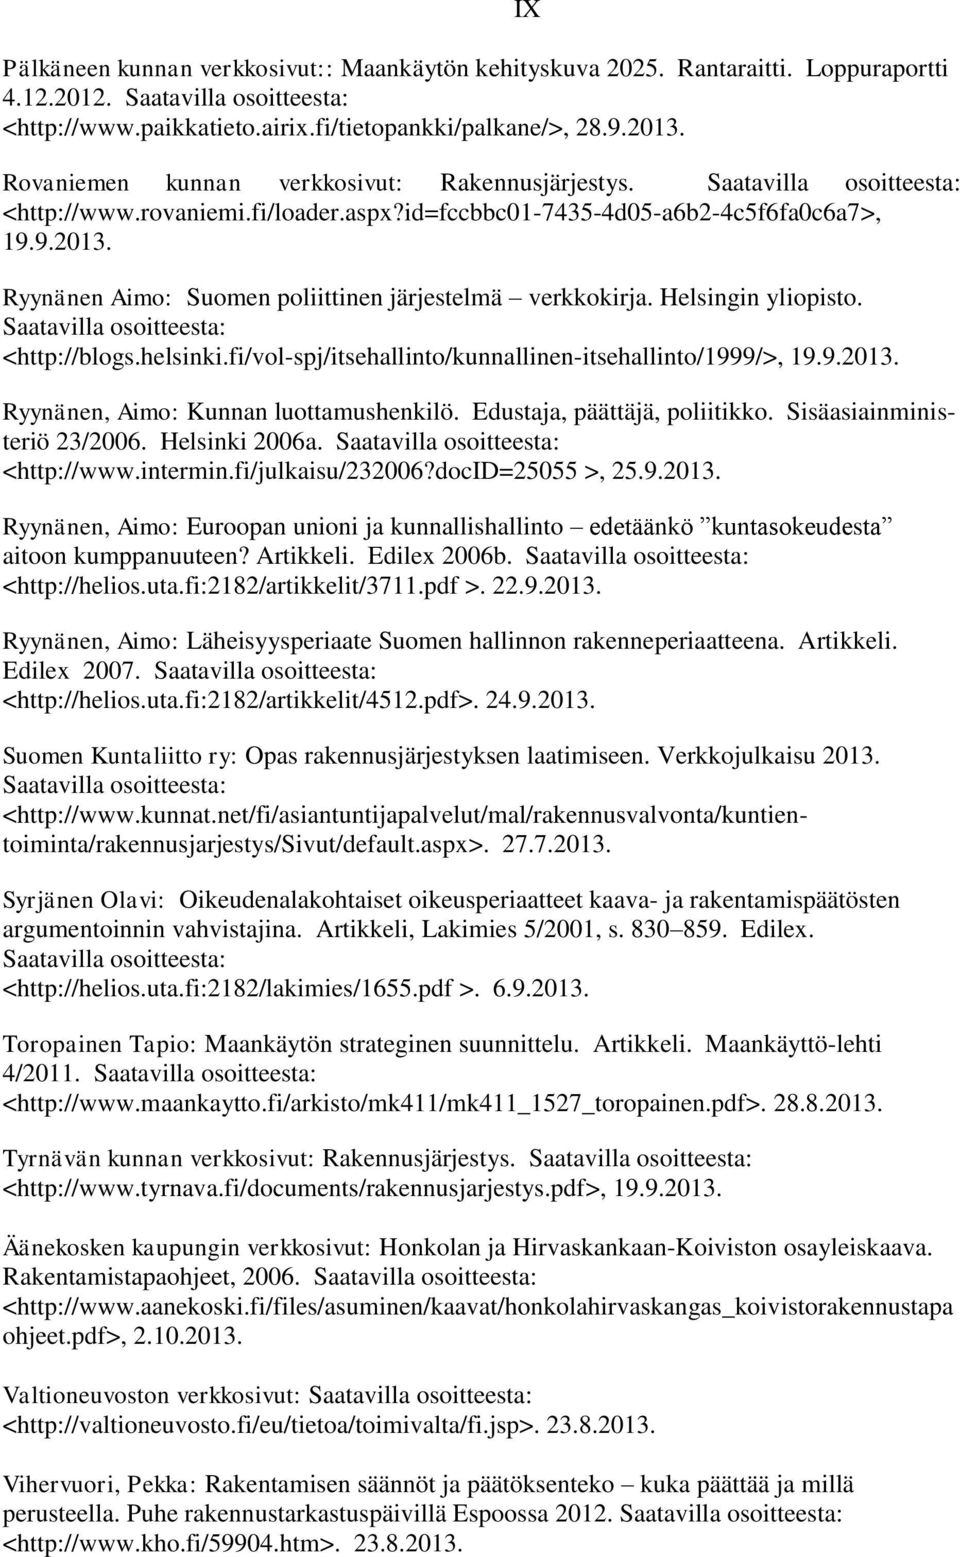 Ryynänen Aimo: Suomen poliittinen järjestelmä verkkokirja. Helsingin yliopisto. Saatavilla osoitteesta: <http://blogs.helsinki.fi/vol-spj/itsehallinto/kunnallinen-itsehallinto/1999/>, 19.9.2013.